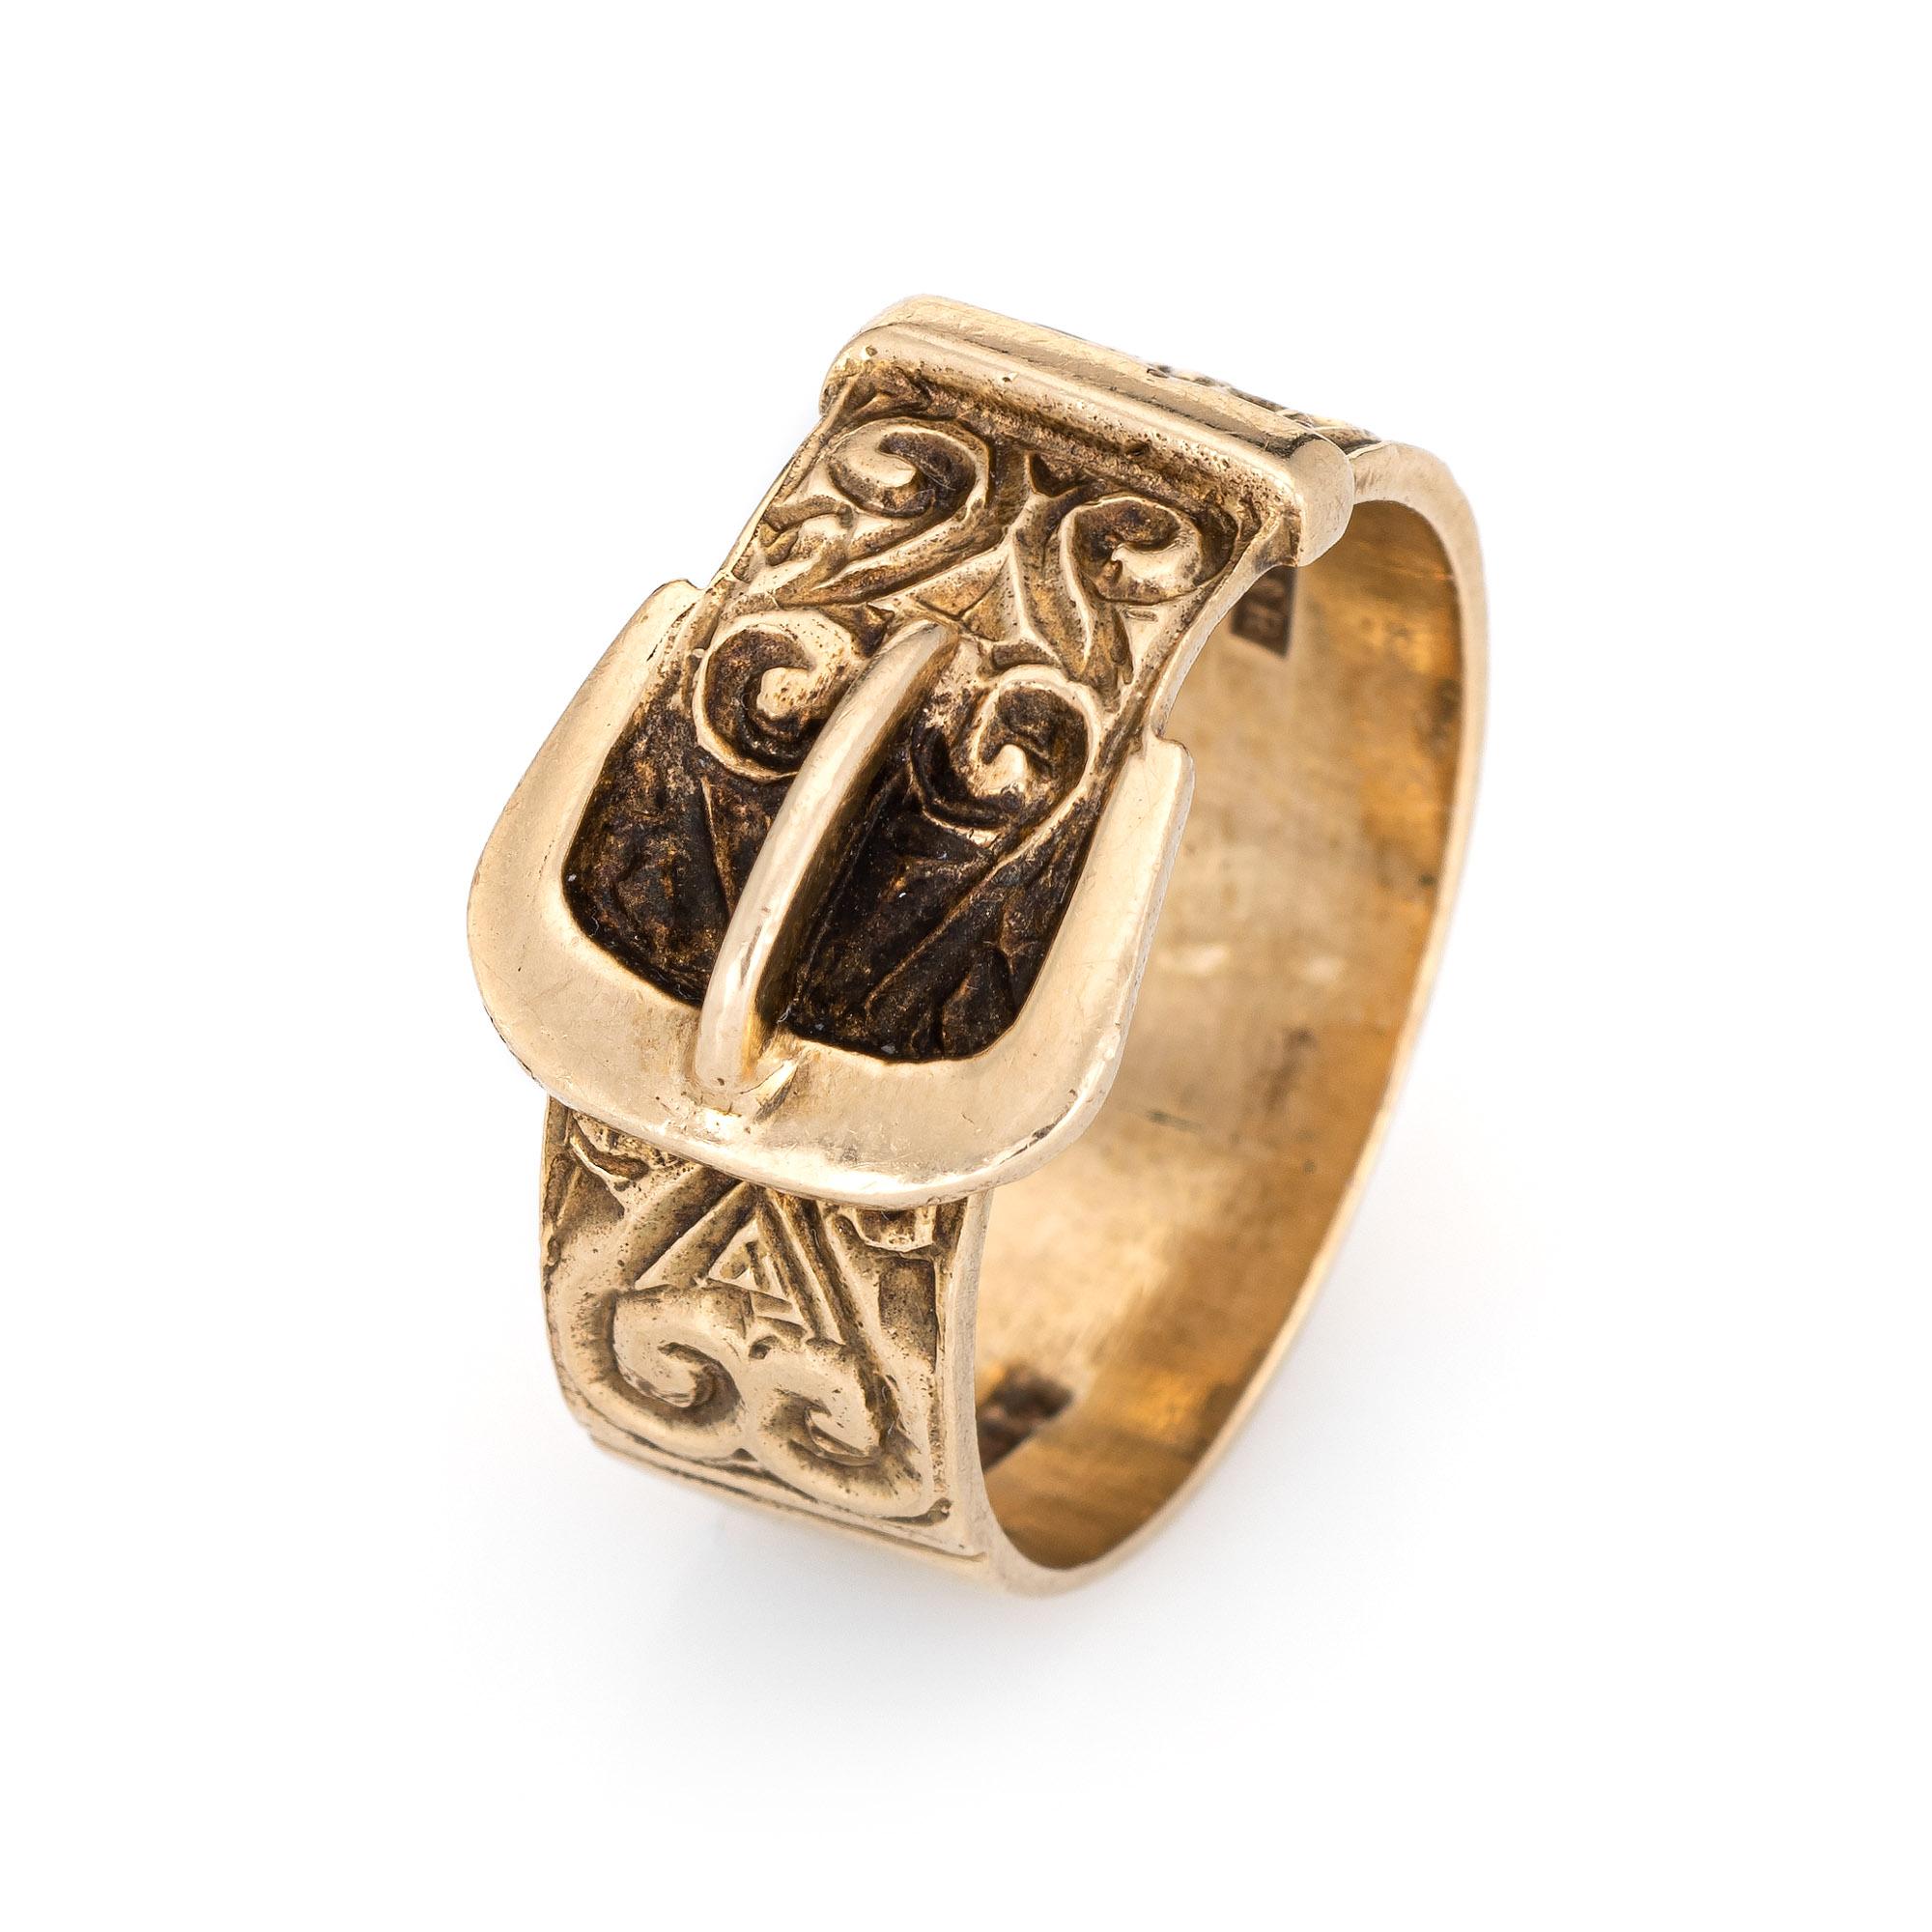 Élégante bague à boucle vintage (circa 1970) réalisée en or rose 9 carats. 

L'anneau de la boucle présente des détails gravés en volutes avec un motif romantique en forme de cœur à une extrémité. L'anneau à boucle est un motif populaire, qui